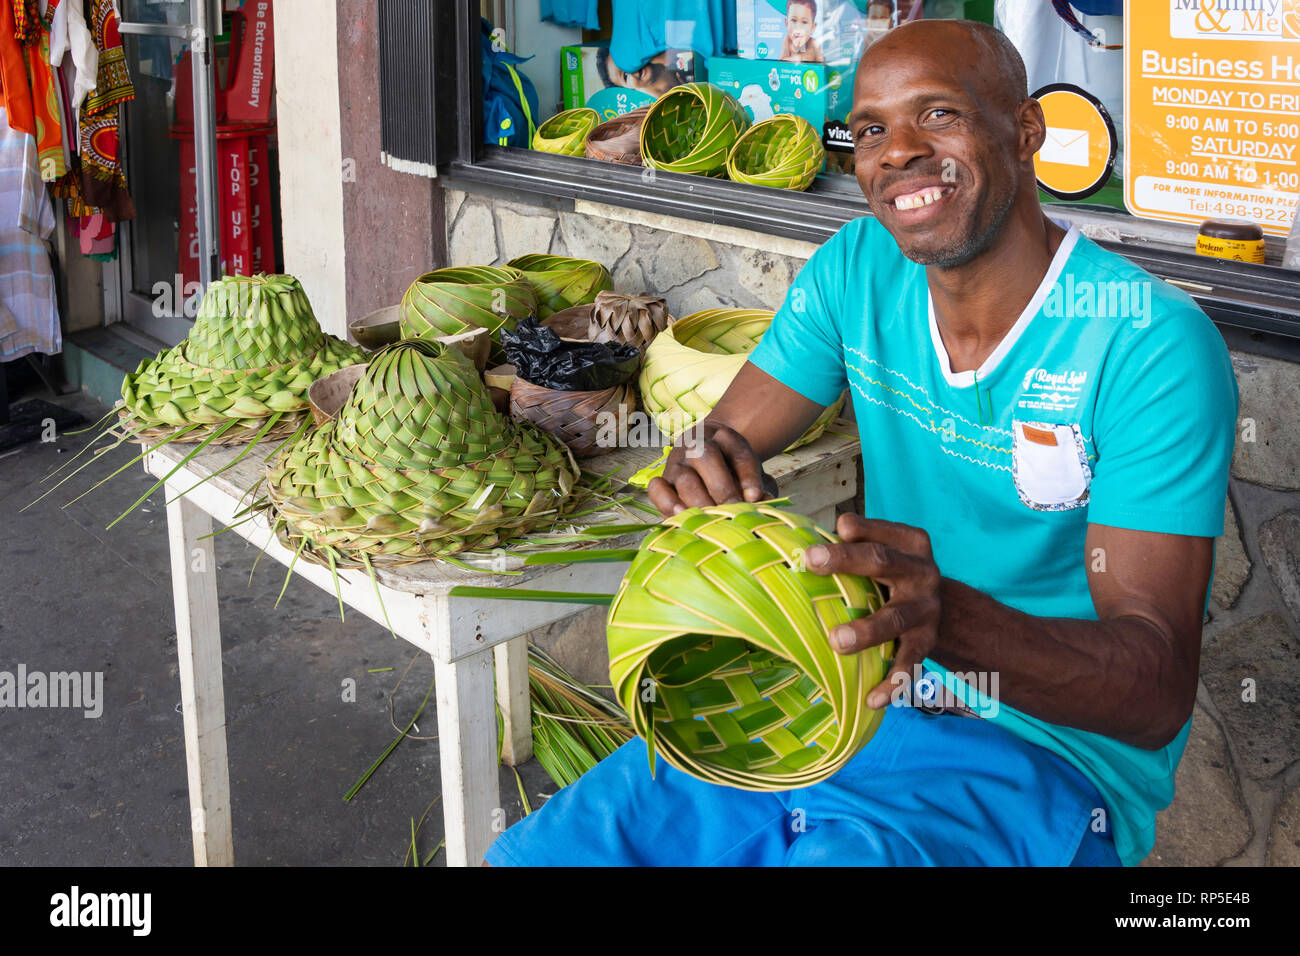 Hombre local haciendo sombreros de paja y cuencos, Upper Bay Street, Kingston, San Vicente y las Granadinas, Antillas, Caribe Foto de stock